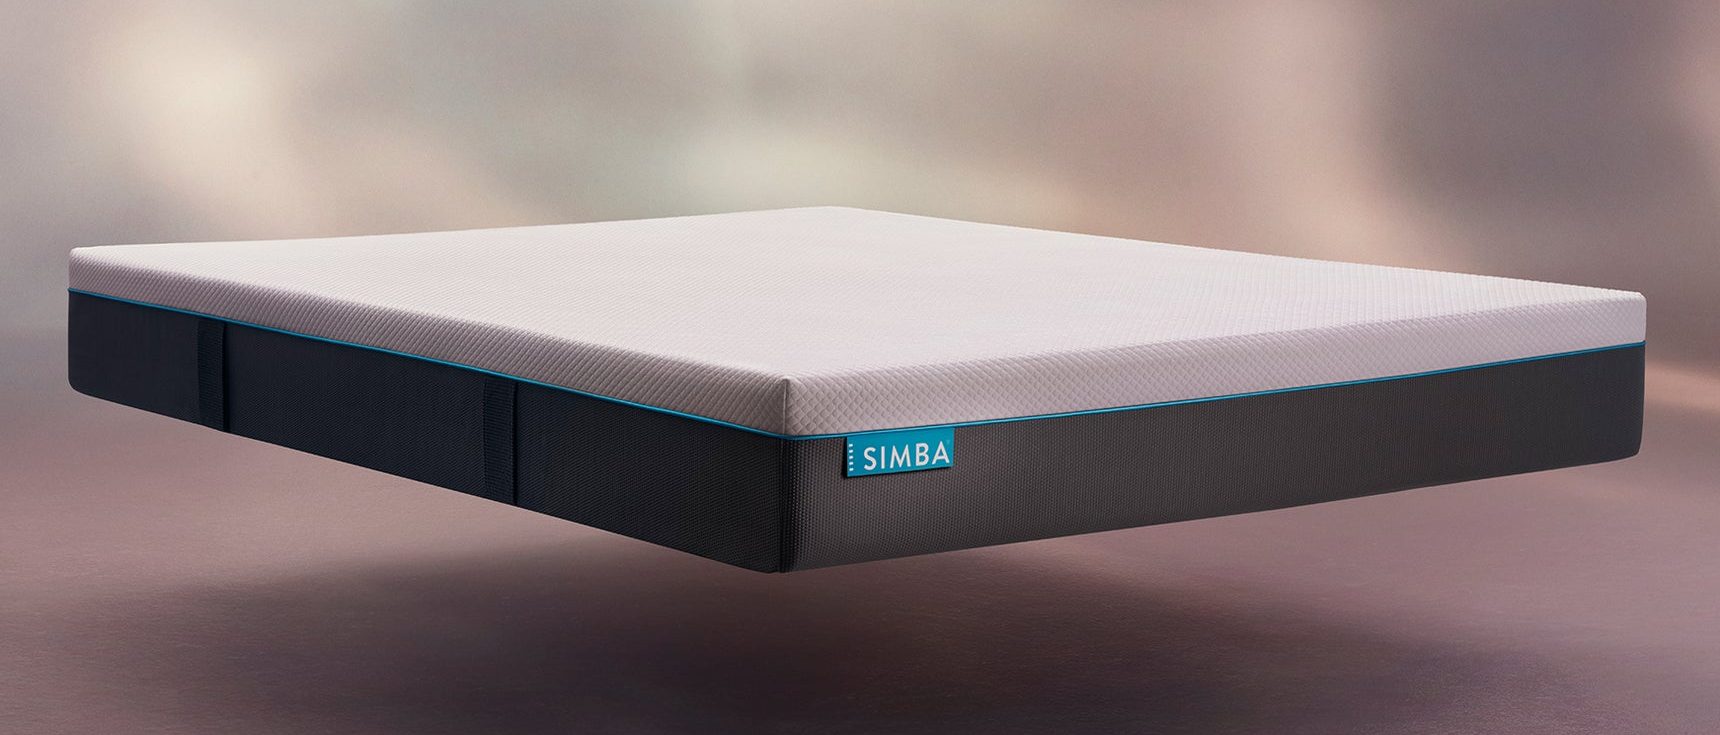 simba hybrid mattress